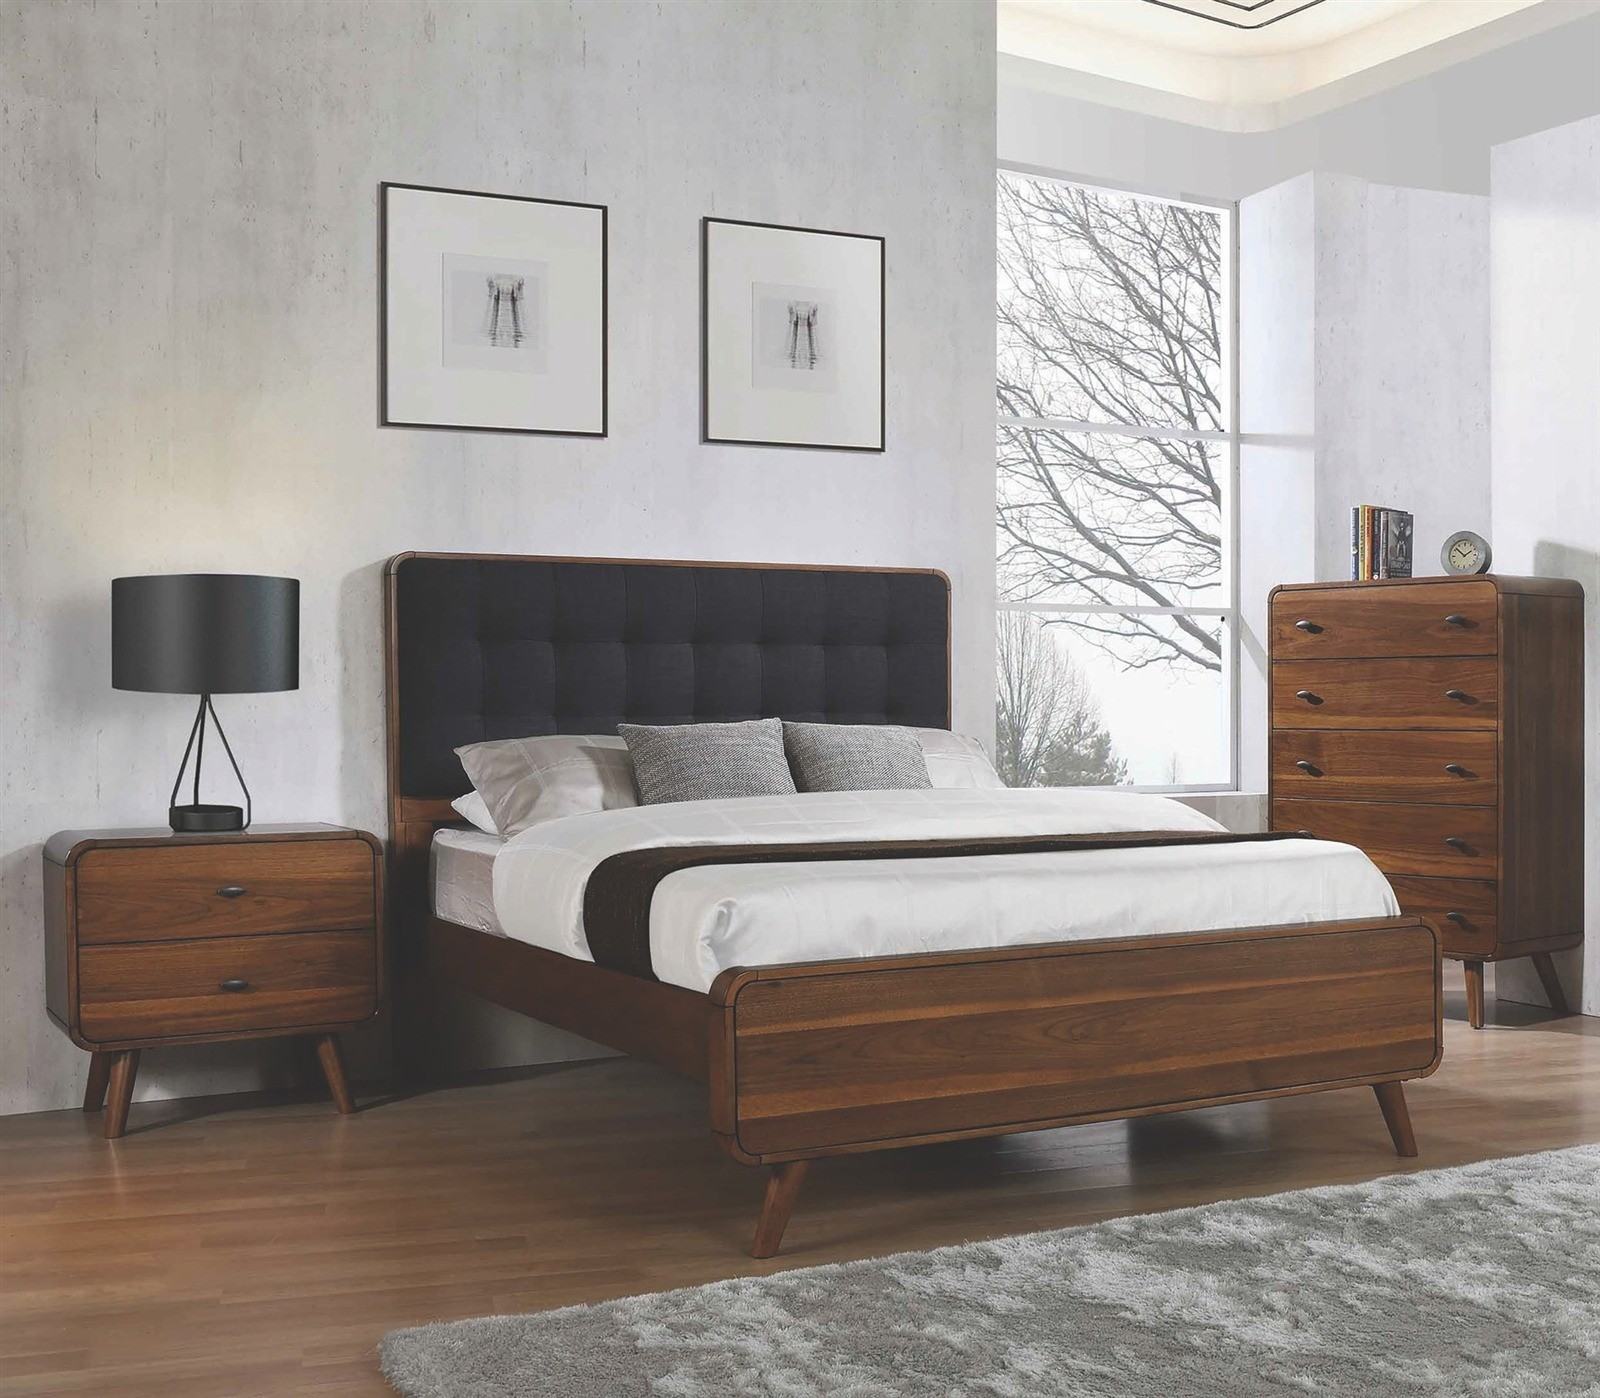 Mẫu nội thất giường gỗ sang trọng được lựa chọn thi công cho phòng ngủ hiện đại